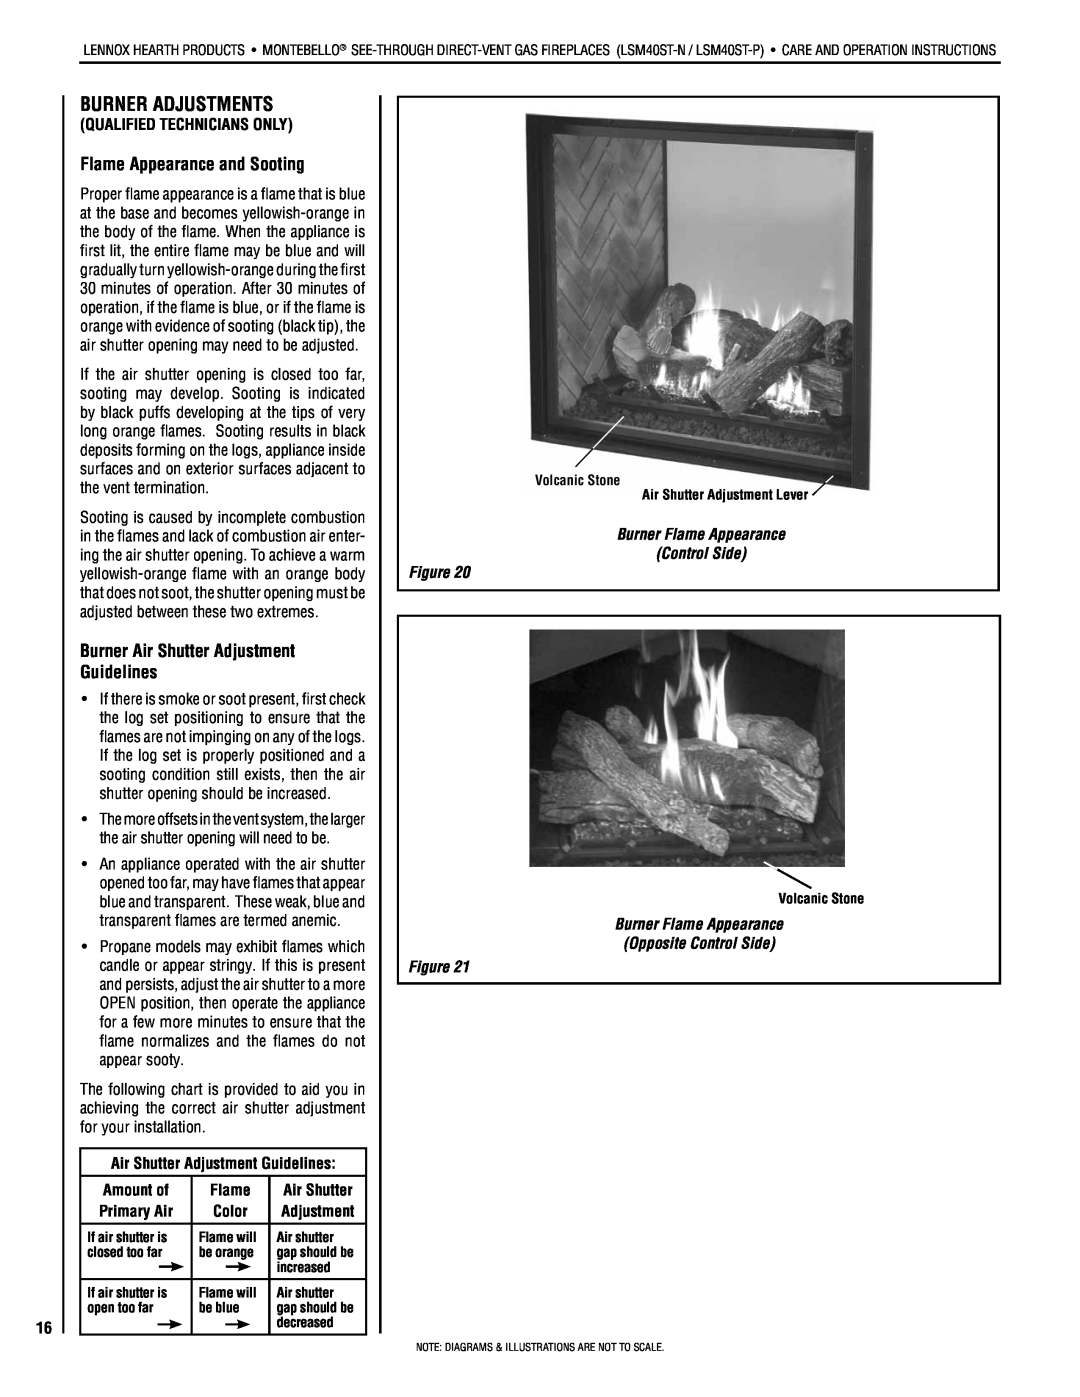 Lennox Hearth LSM40ST-N Burner Adjustments, Flame Appearance and Sooting, Burner Air Shutter Adjustment Guidelines 